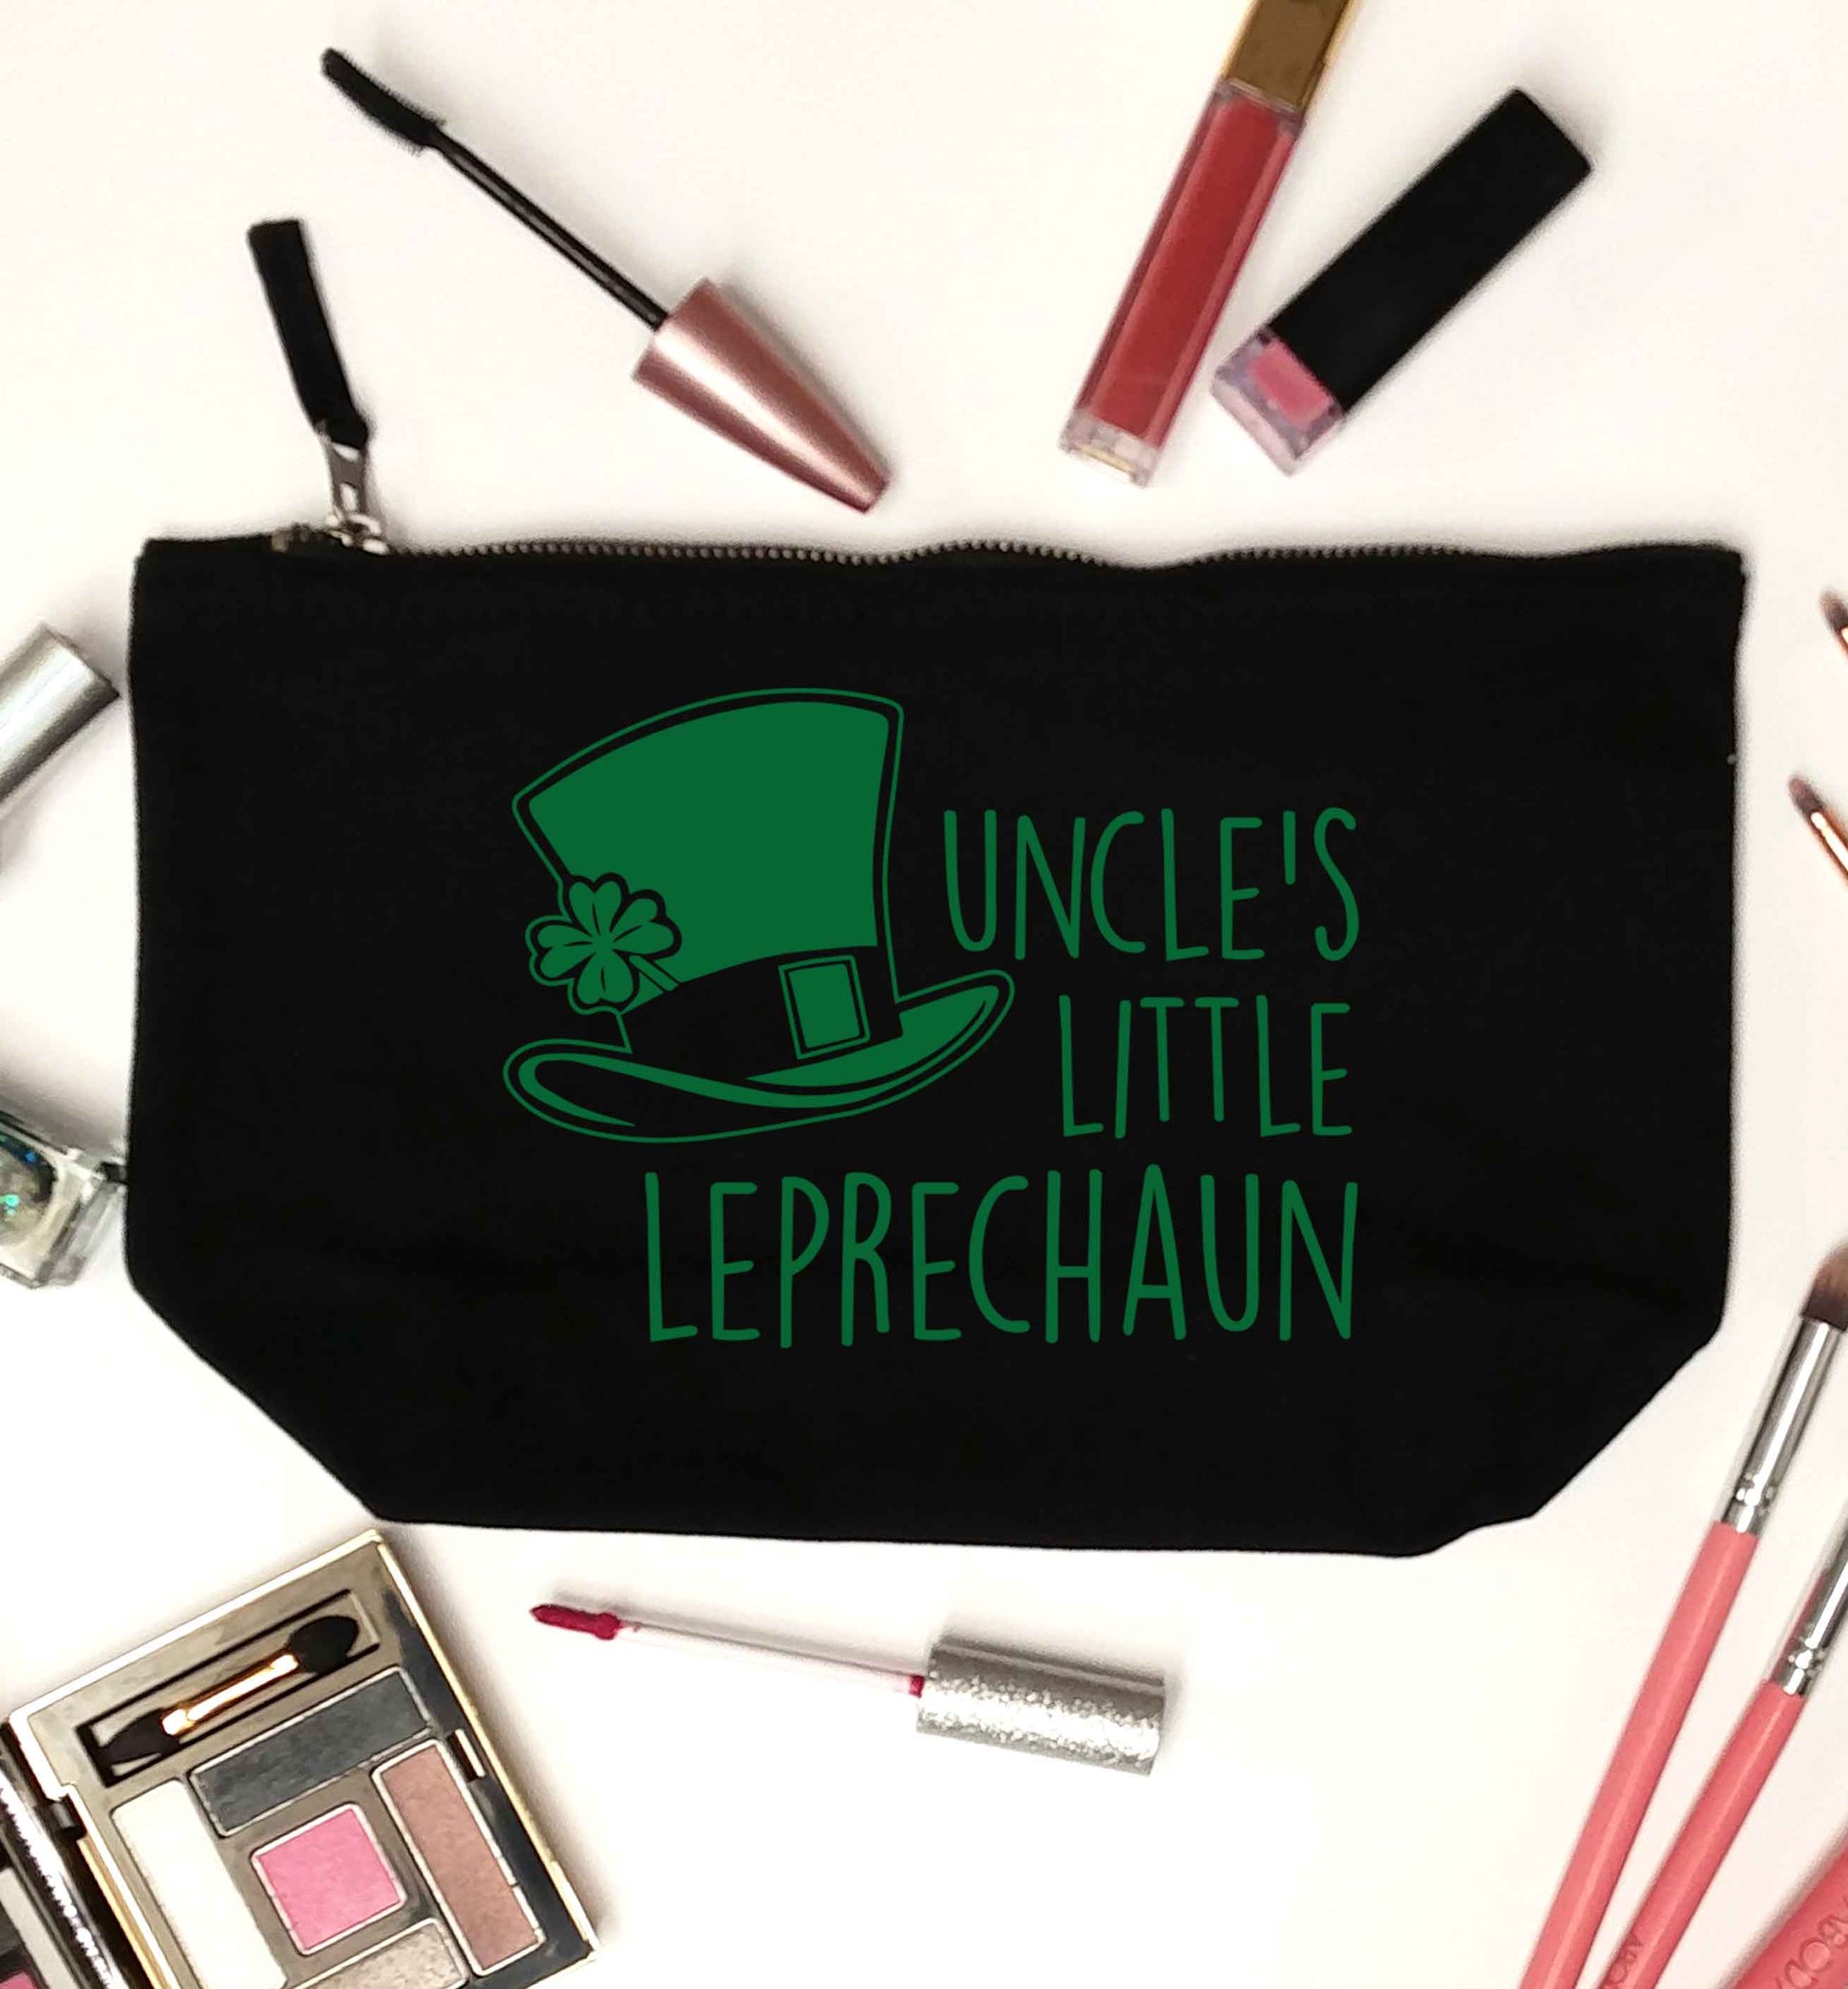 Uncles little leprechaun black makeup bag